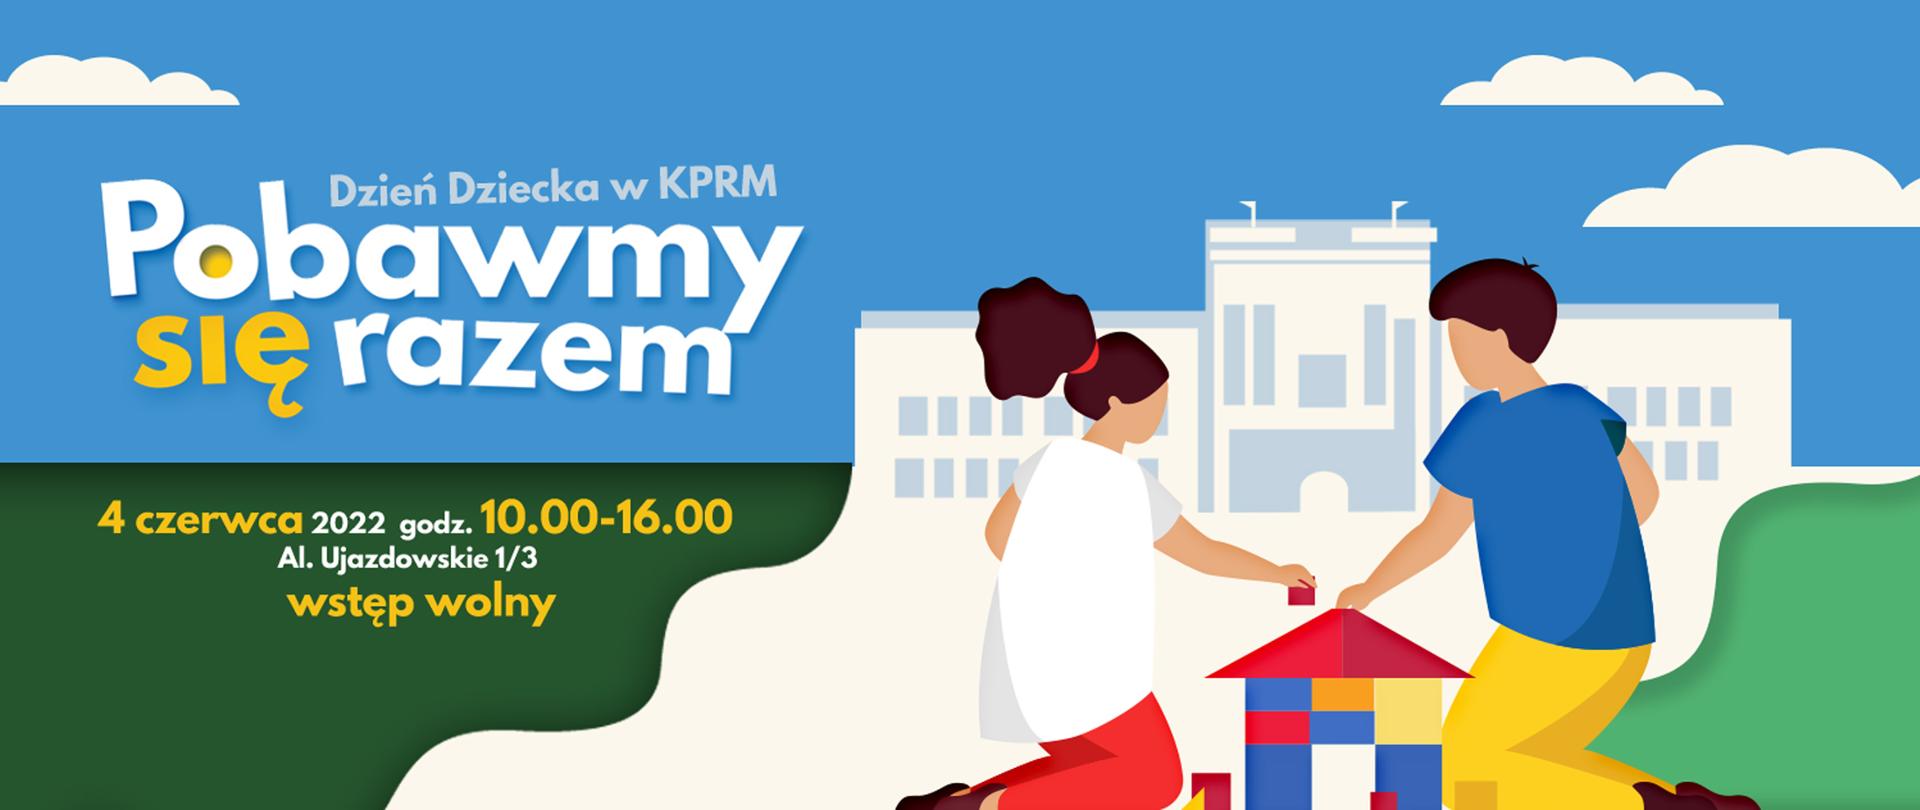 Dzień Dziecka w KPRM "Pobawmy się razem", 4 czerwca 2022 - grafika: dwoje dzieci układa domek z klocków, w tle budynek KPRM